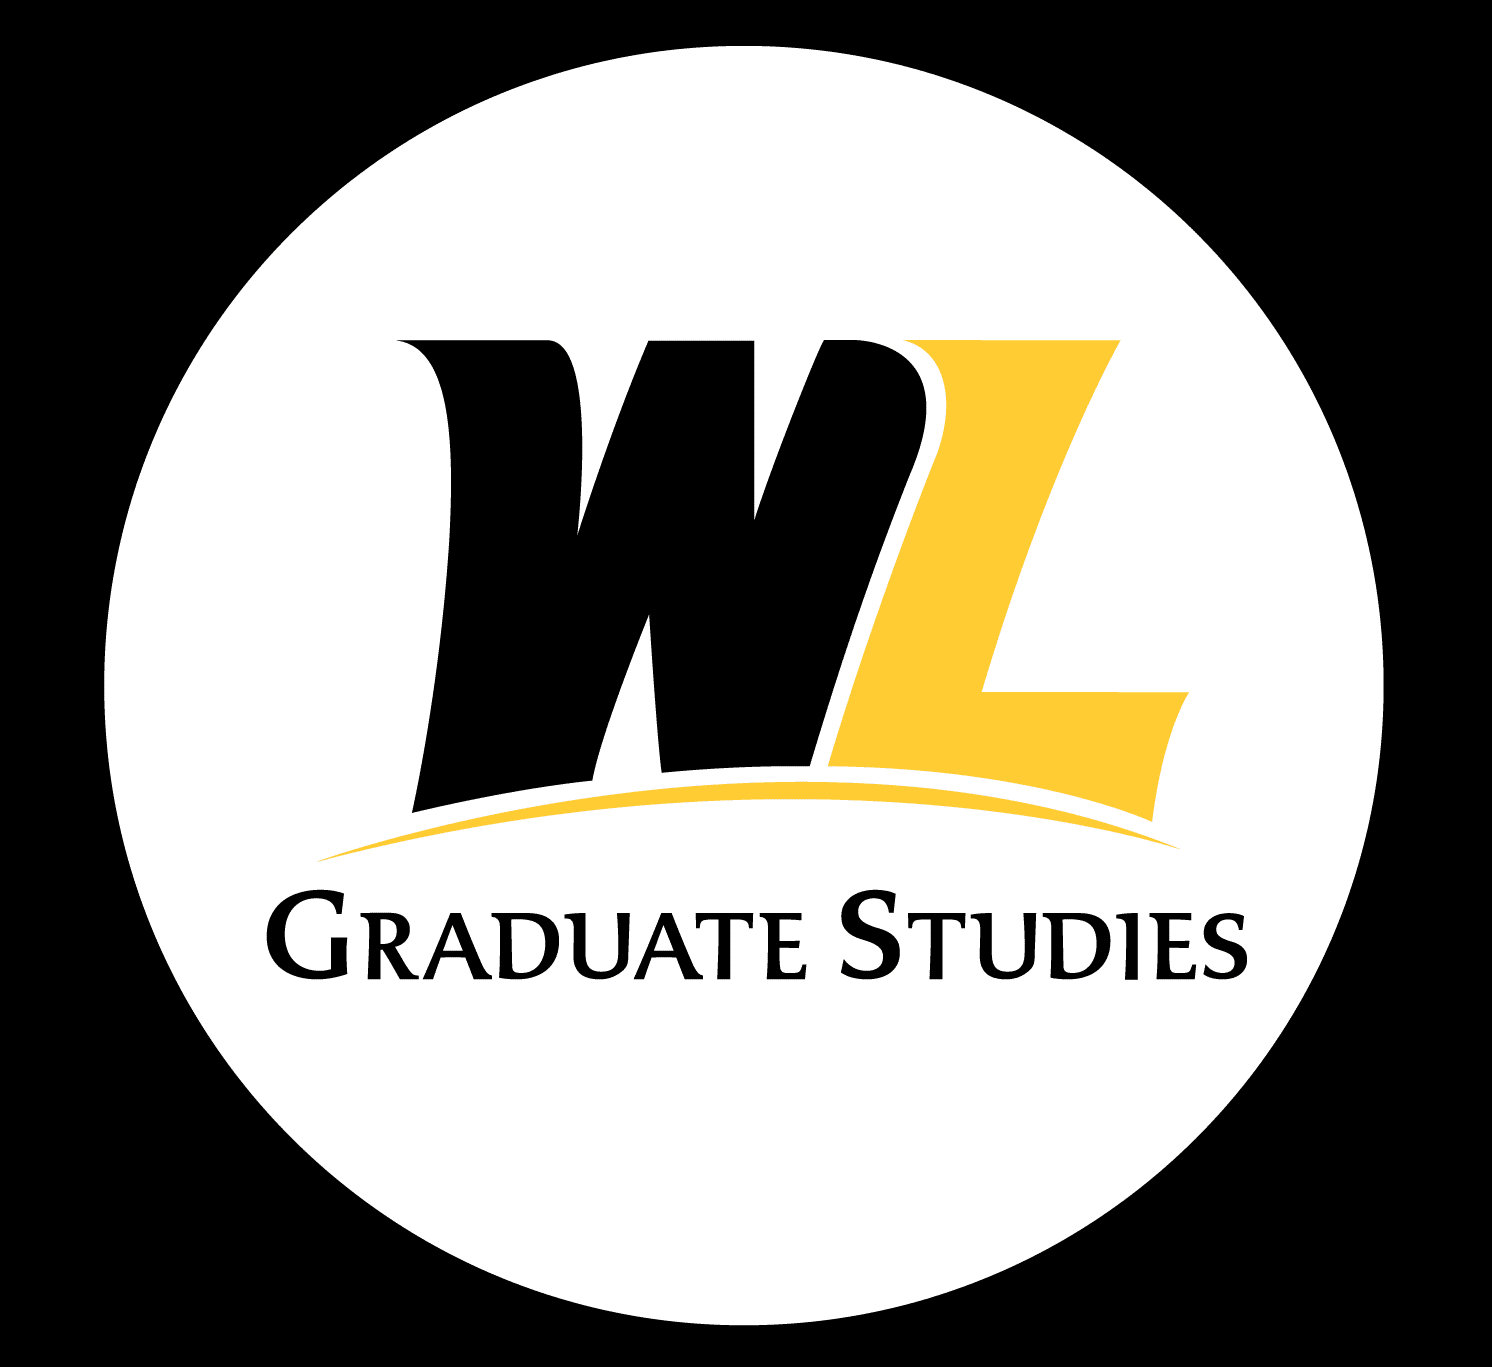 Graduate Orientation - Graduate Programs